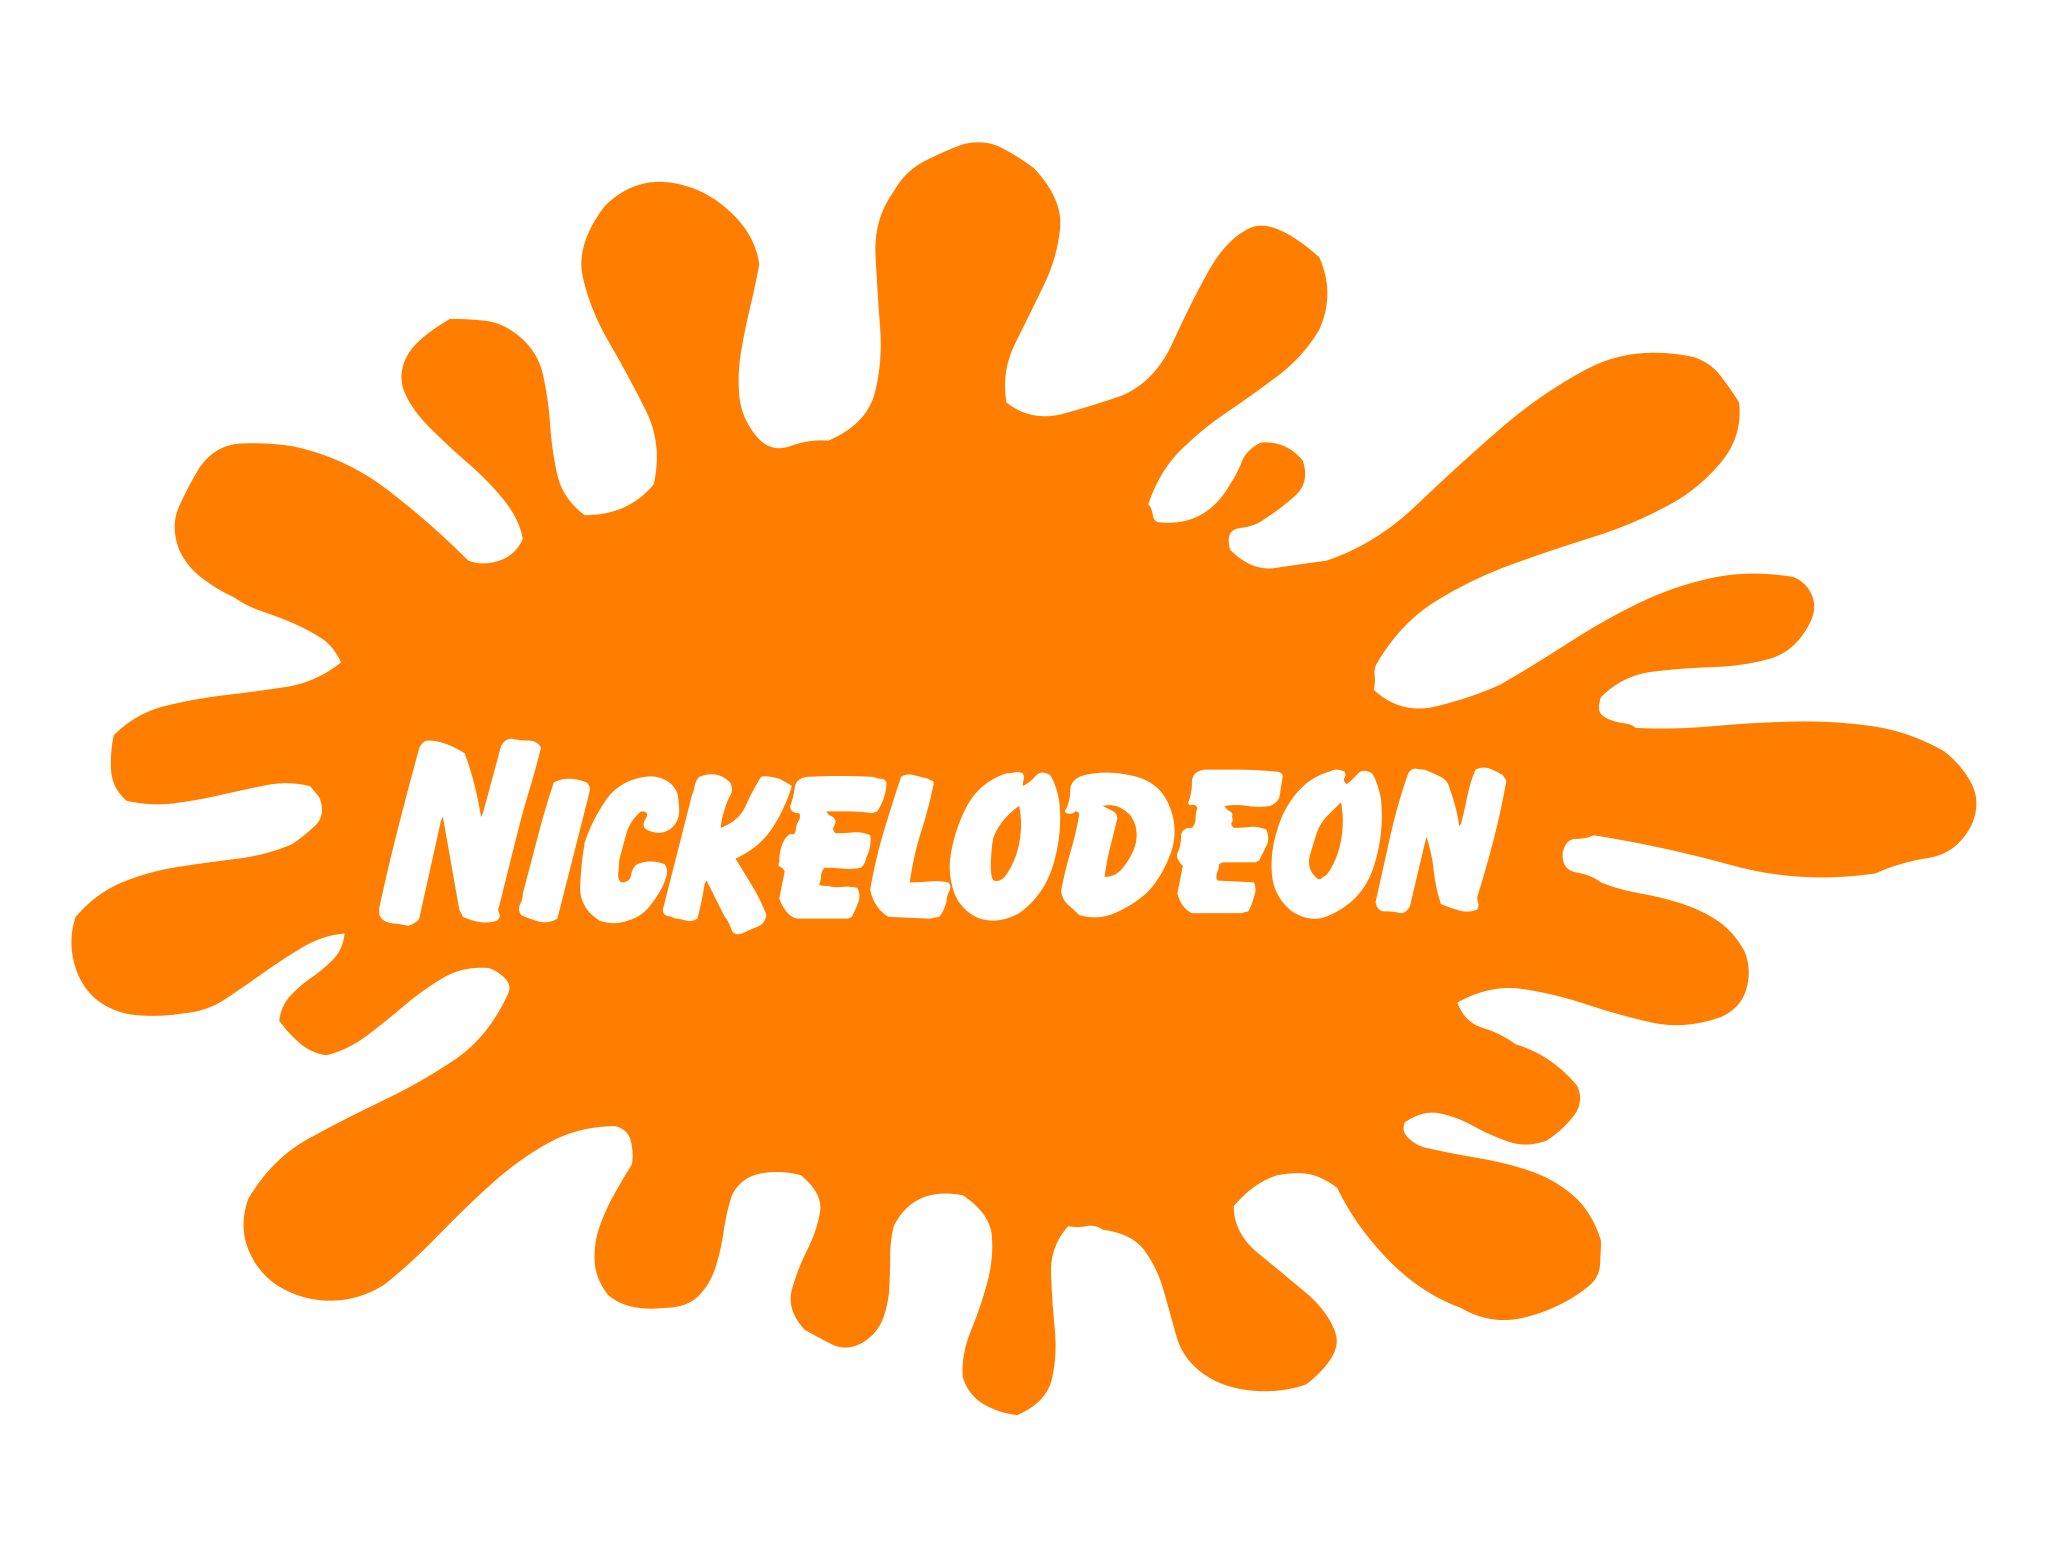 2018 Nickelodeon Logo - Nickelodeon Classic 90s Logo | Nickelodeon | Know Your Meme